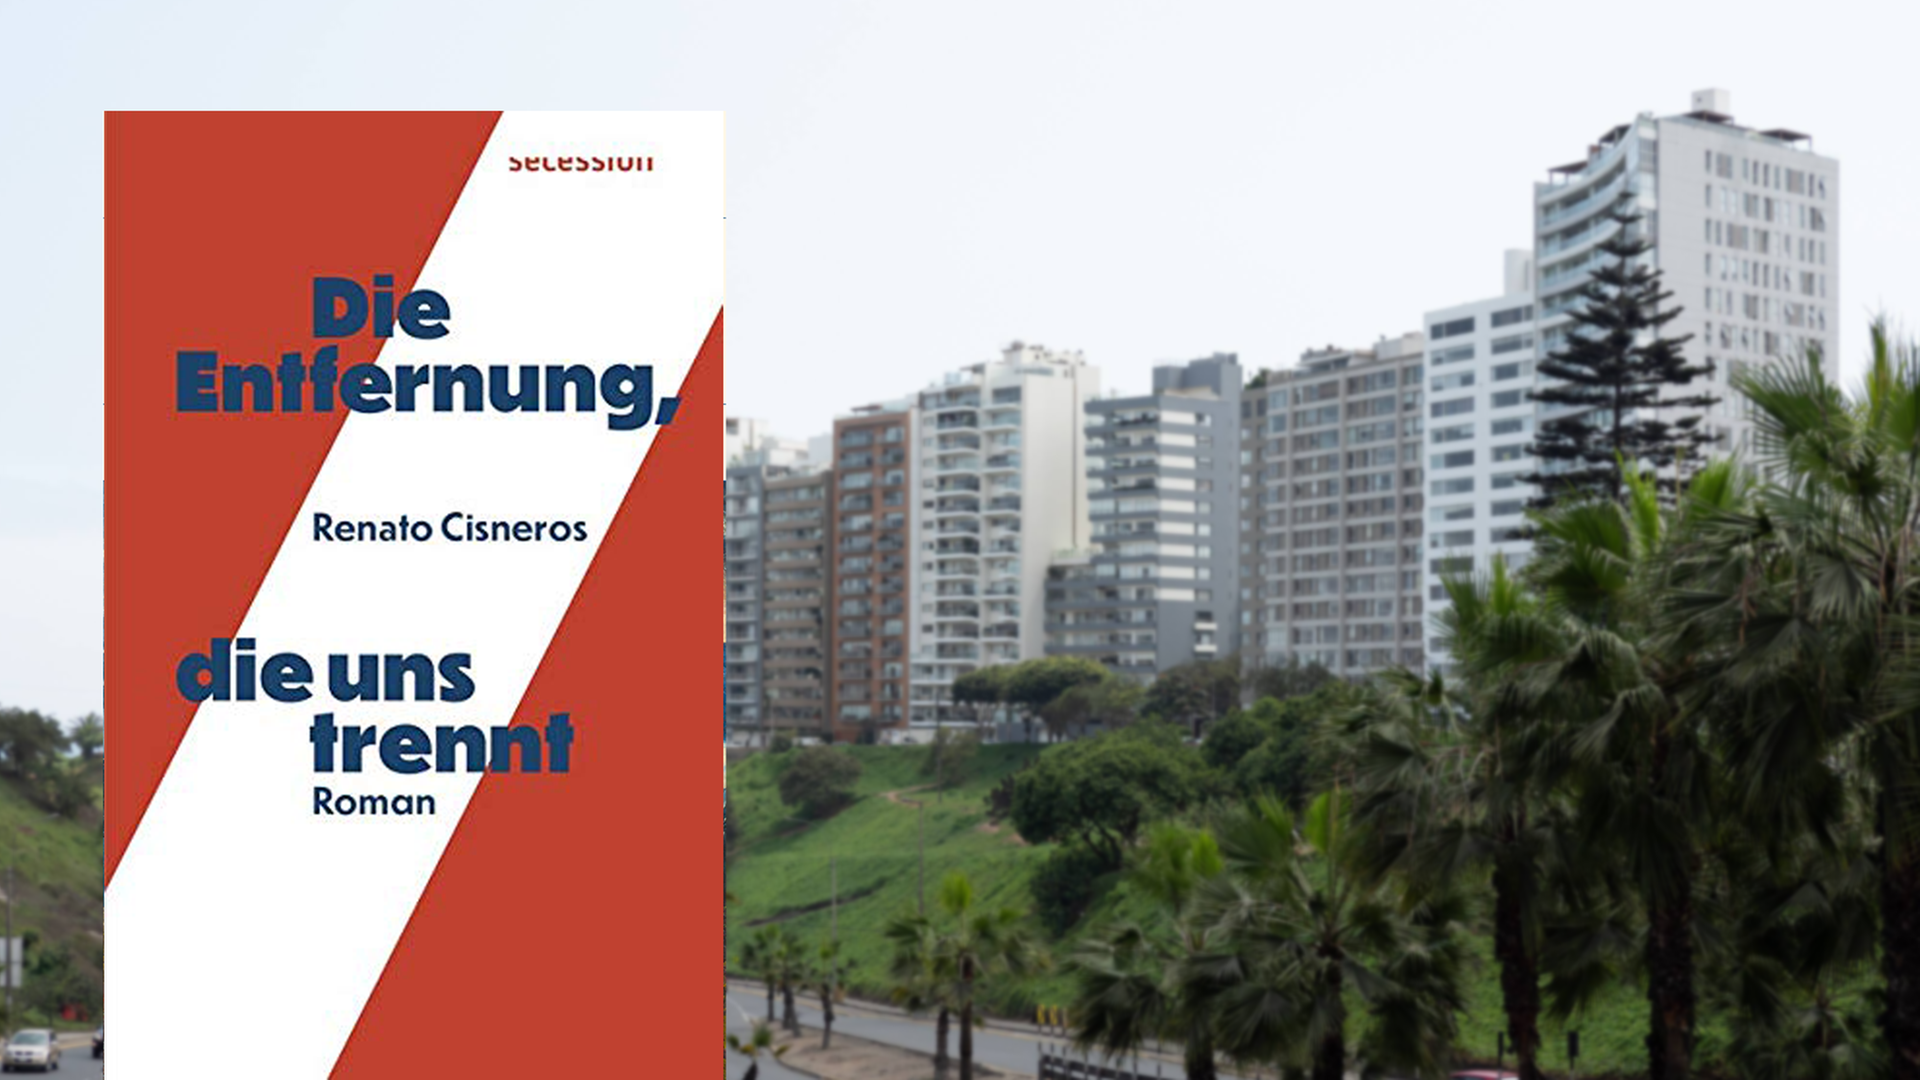 Im Vordergrund ist das Cover des Romans "Die Entfernung, die uns trennt" von Renato Cisneros zu sehen. Im Hintergrund eine Hochhaussiedlung in der peruanischen Hauptstadt Lima.